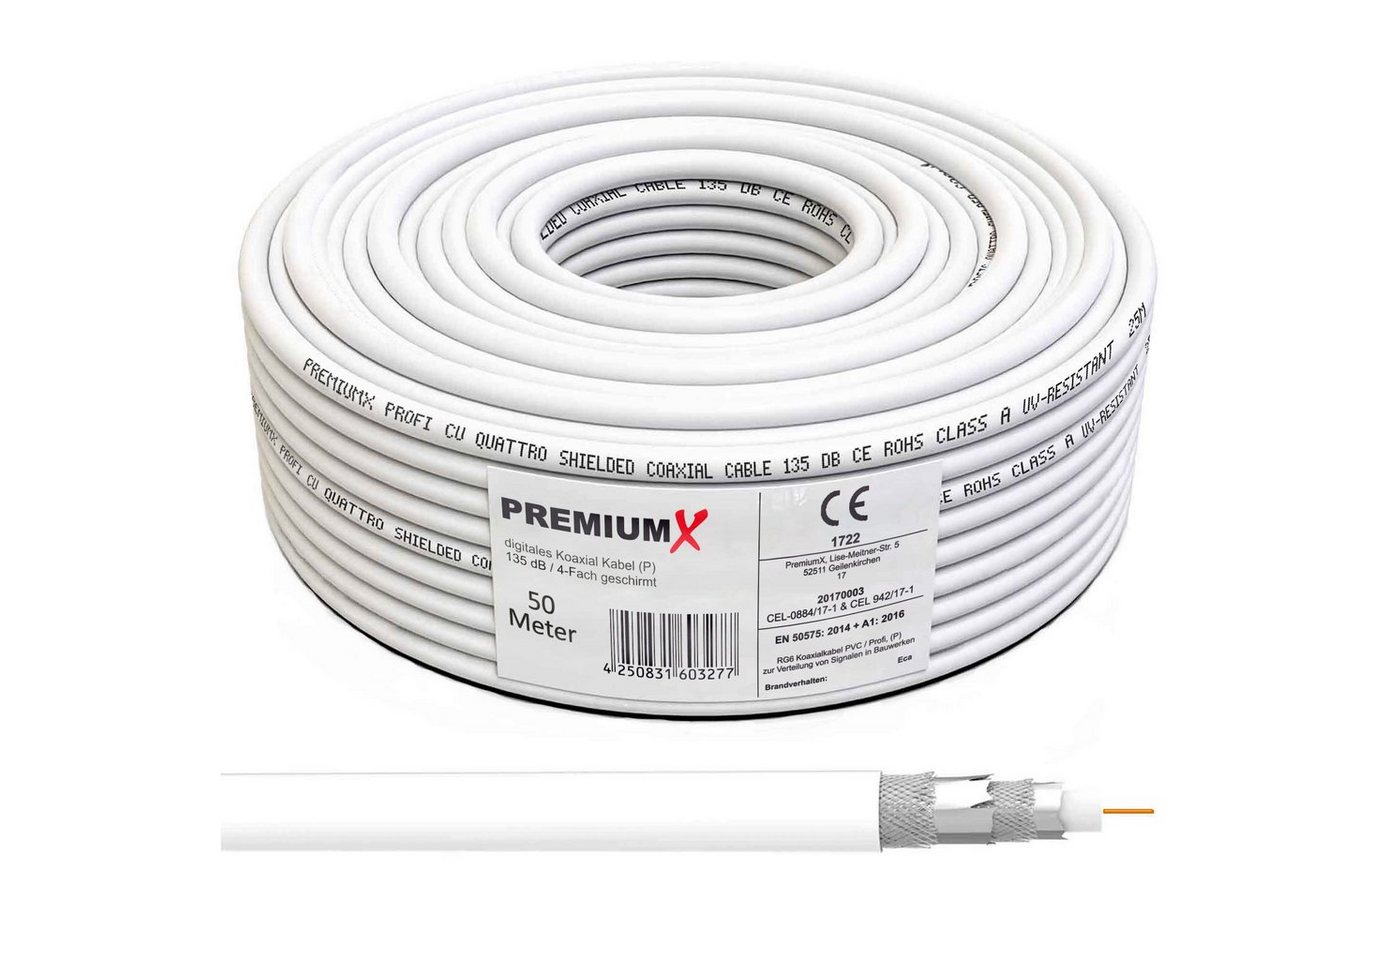 PremiumX 50m PROFI Koaxial Kabel 135 dB 4-Fach geschirmt, REINES KUPFER TV-Kabel von PremiumX